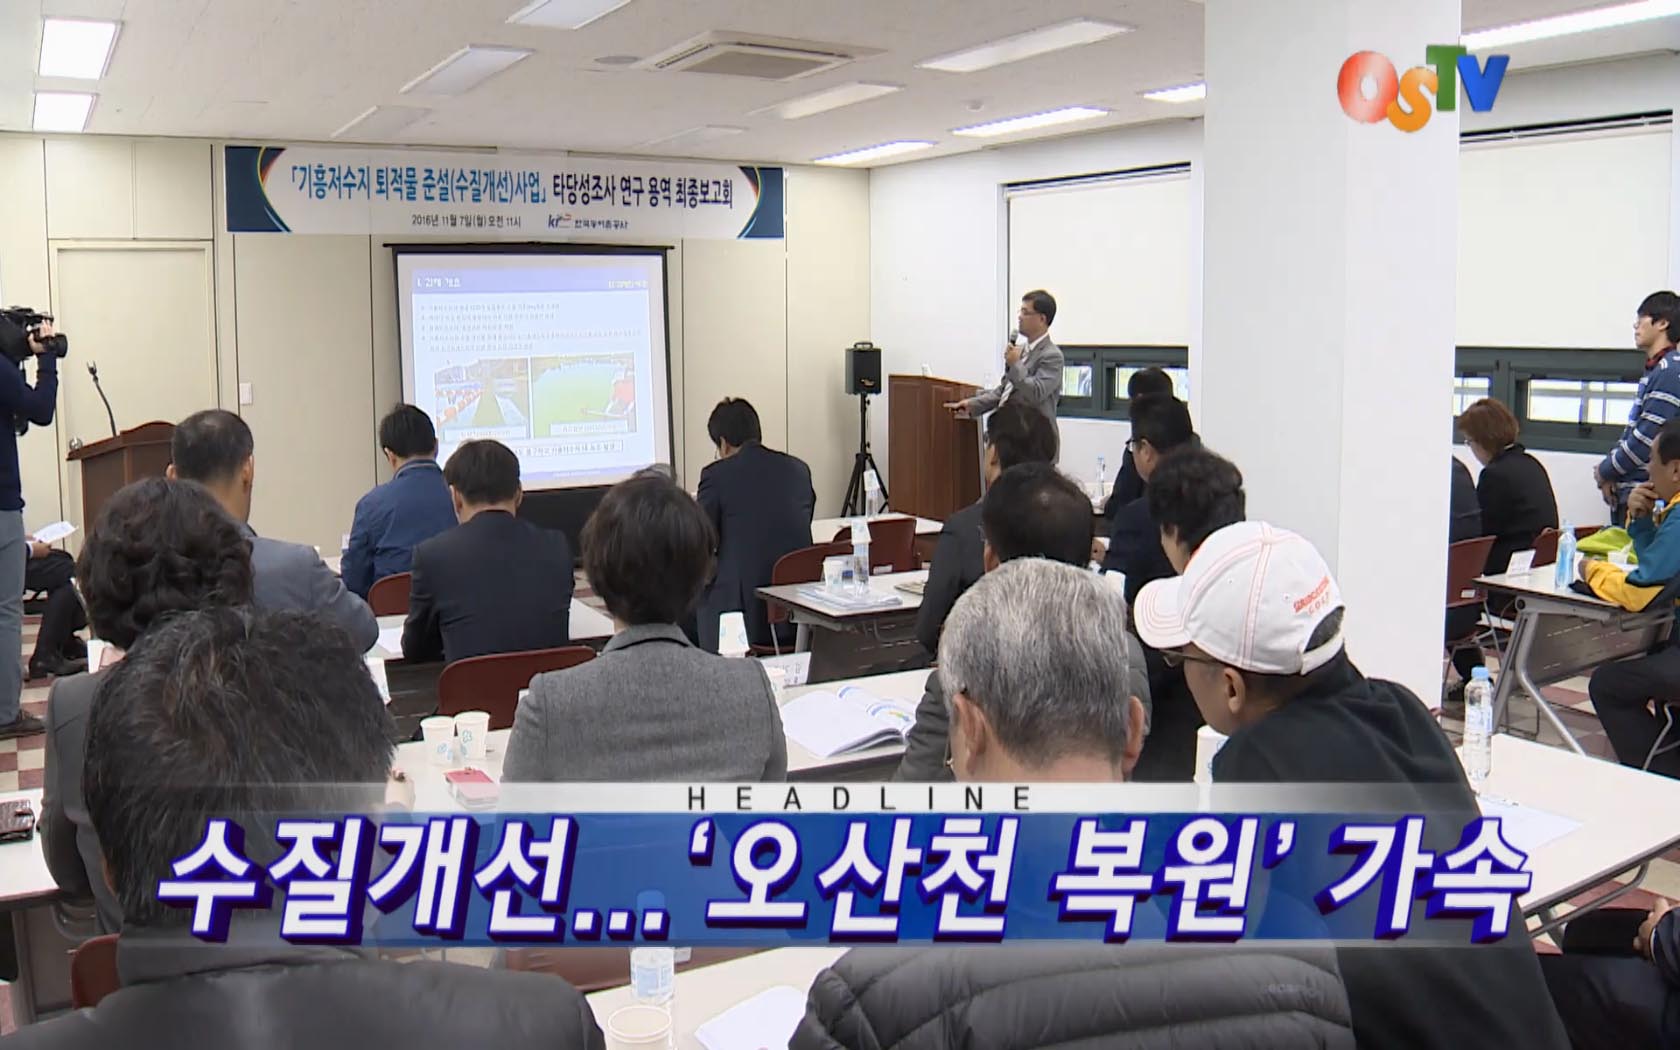 OSTV뉴스 - 2016년 45호 (11월2주차)